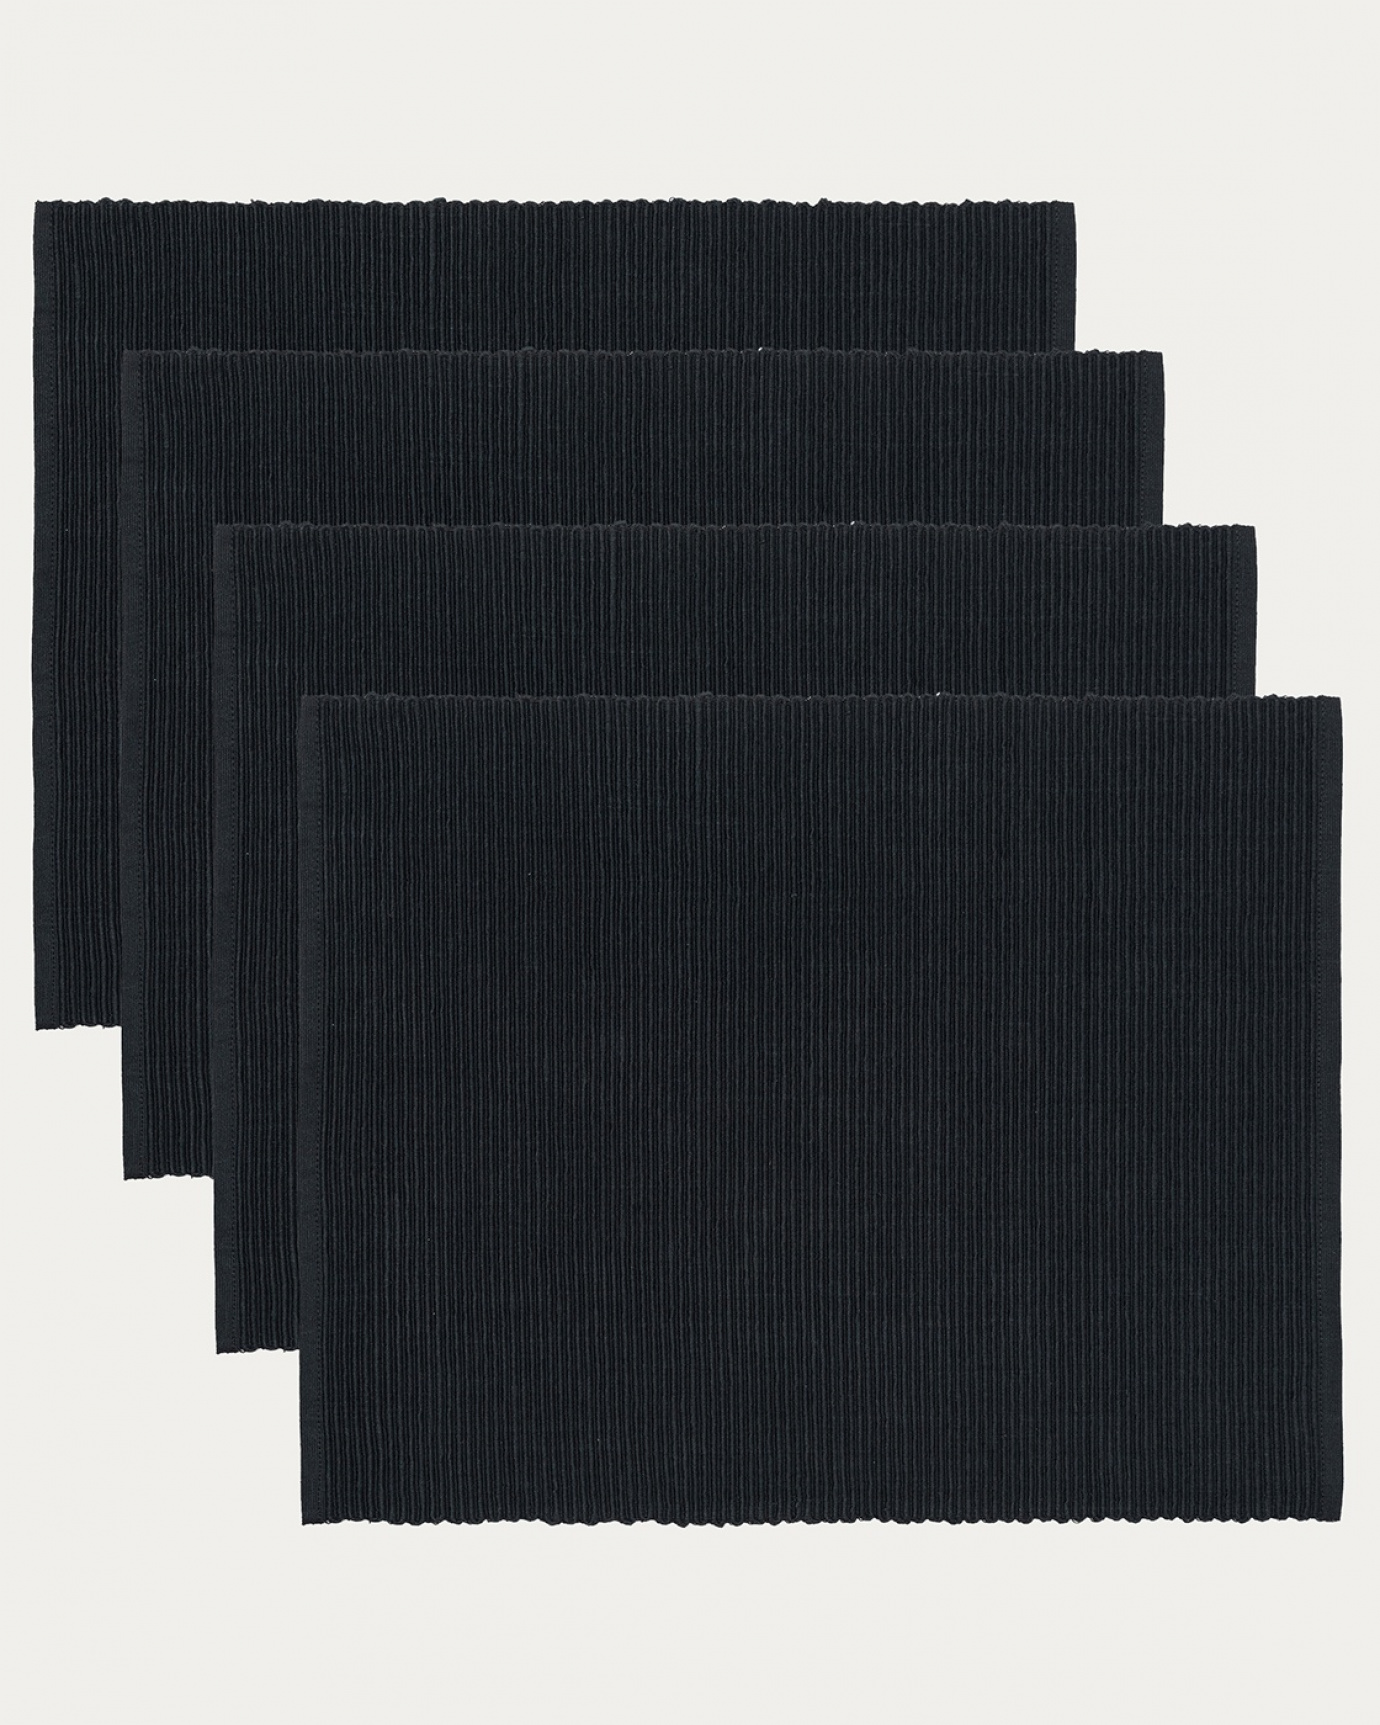 Immagine prodotto nero tovaglietta UNI in morbido cotone a costine di qualità di LINUM DESIGN. Dimensioni 35x46 cm e venduto in 4-pezzi.